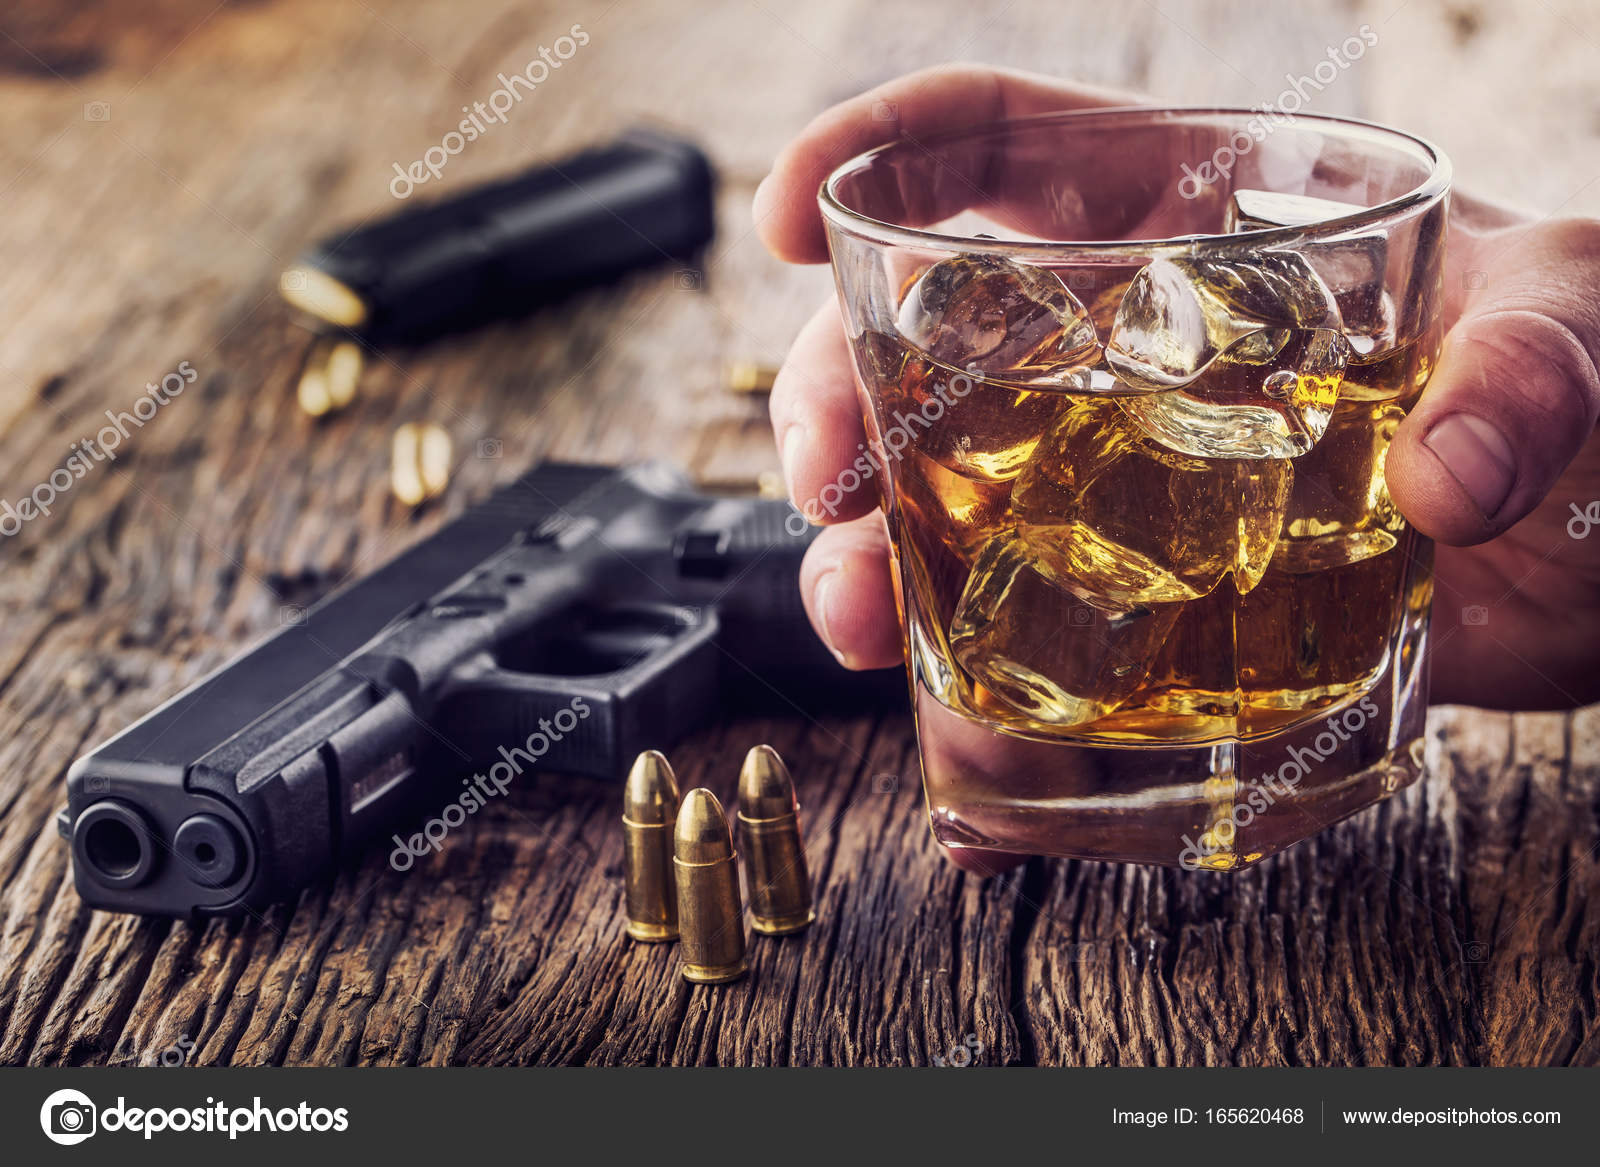 Schusswaffe und Alkohol. 9mm Pistole und Becher Whiskey Cognac